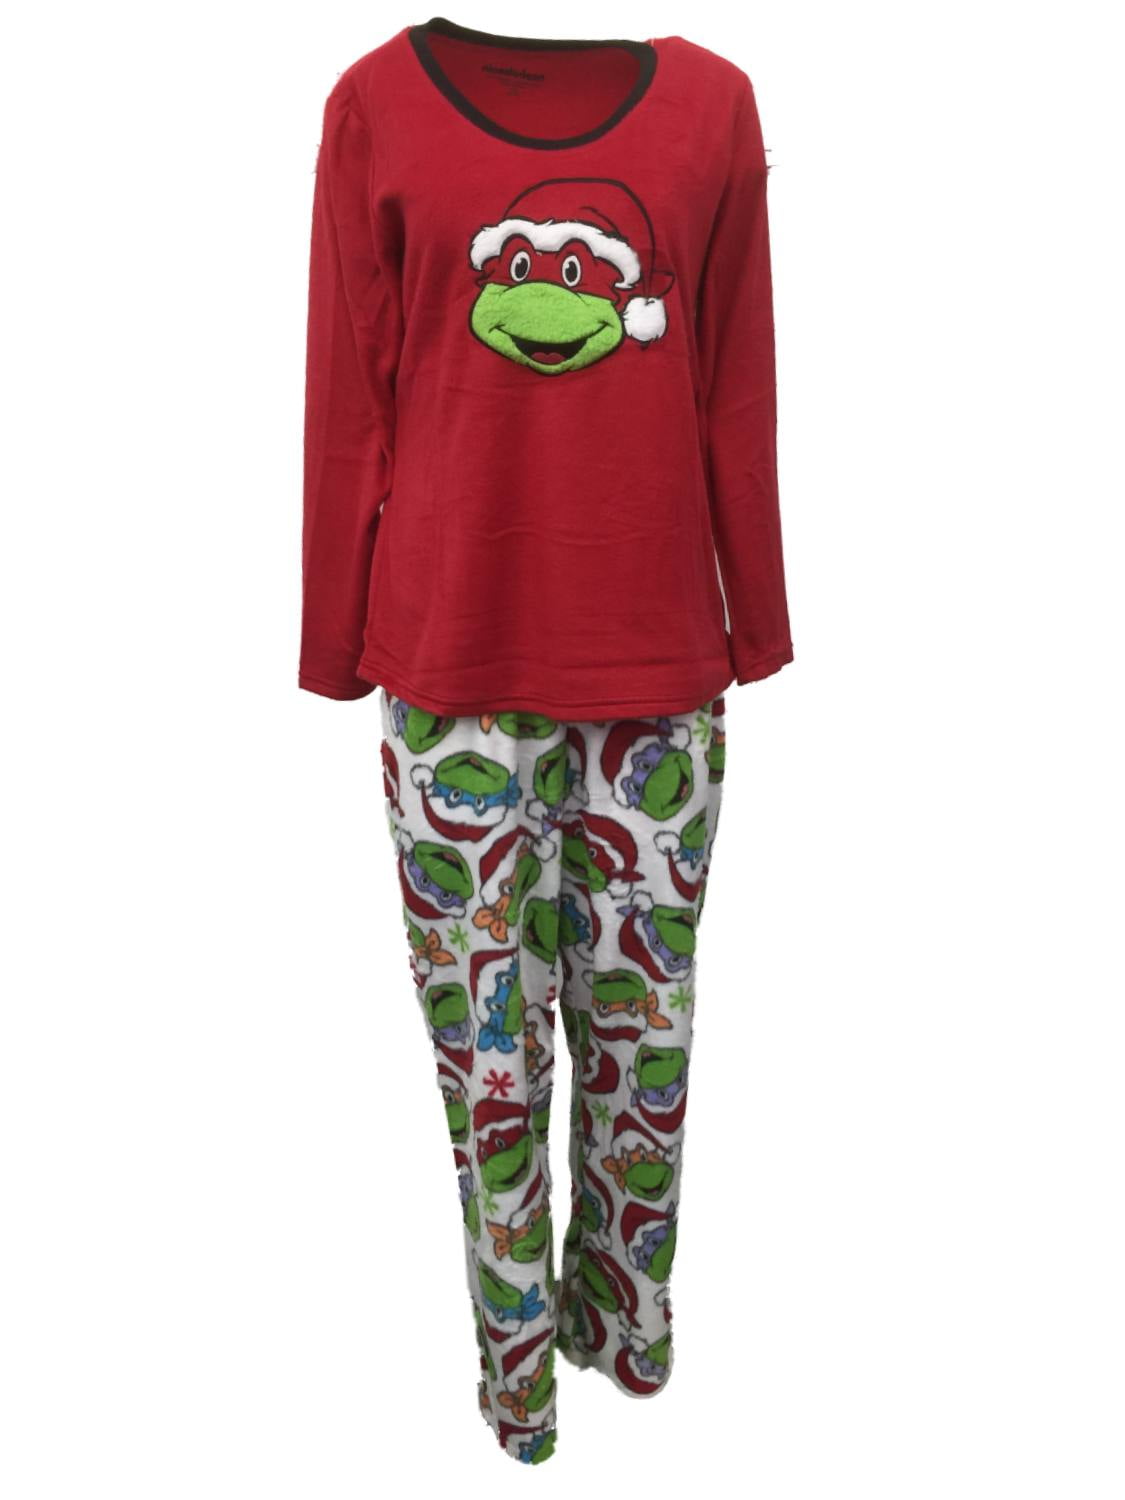 Ninja turtle pajamas at target｜TikTok Search